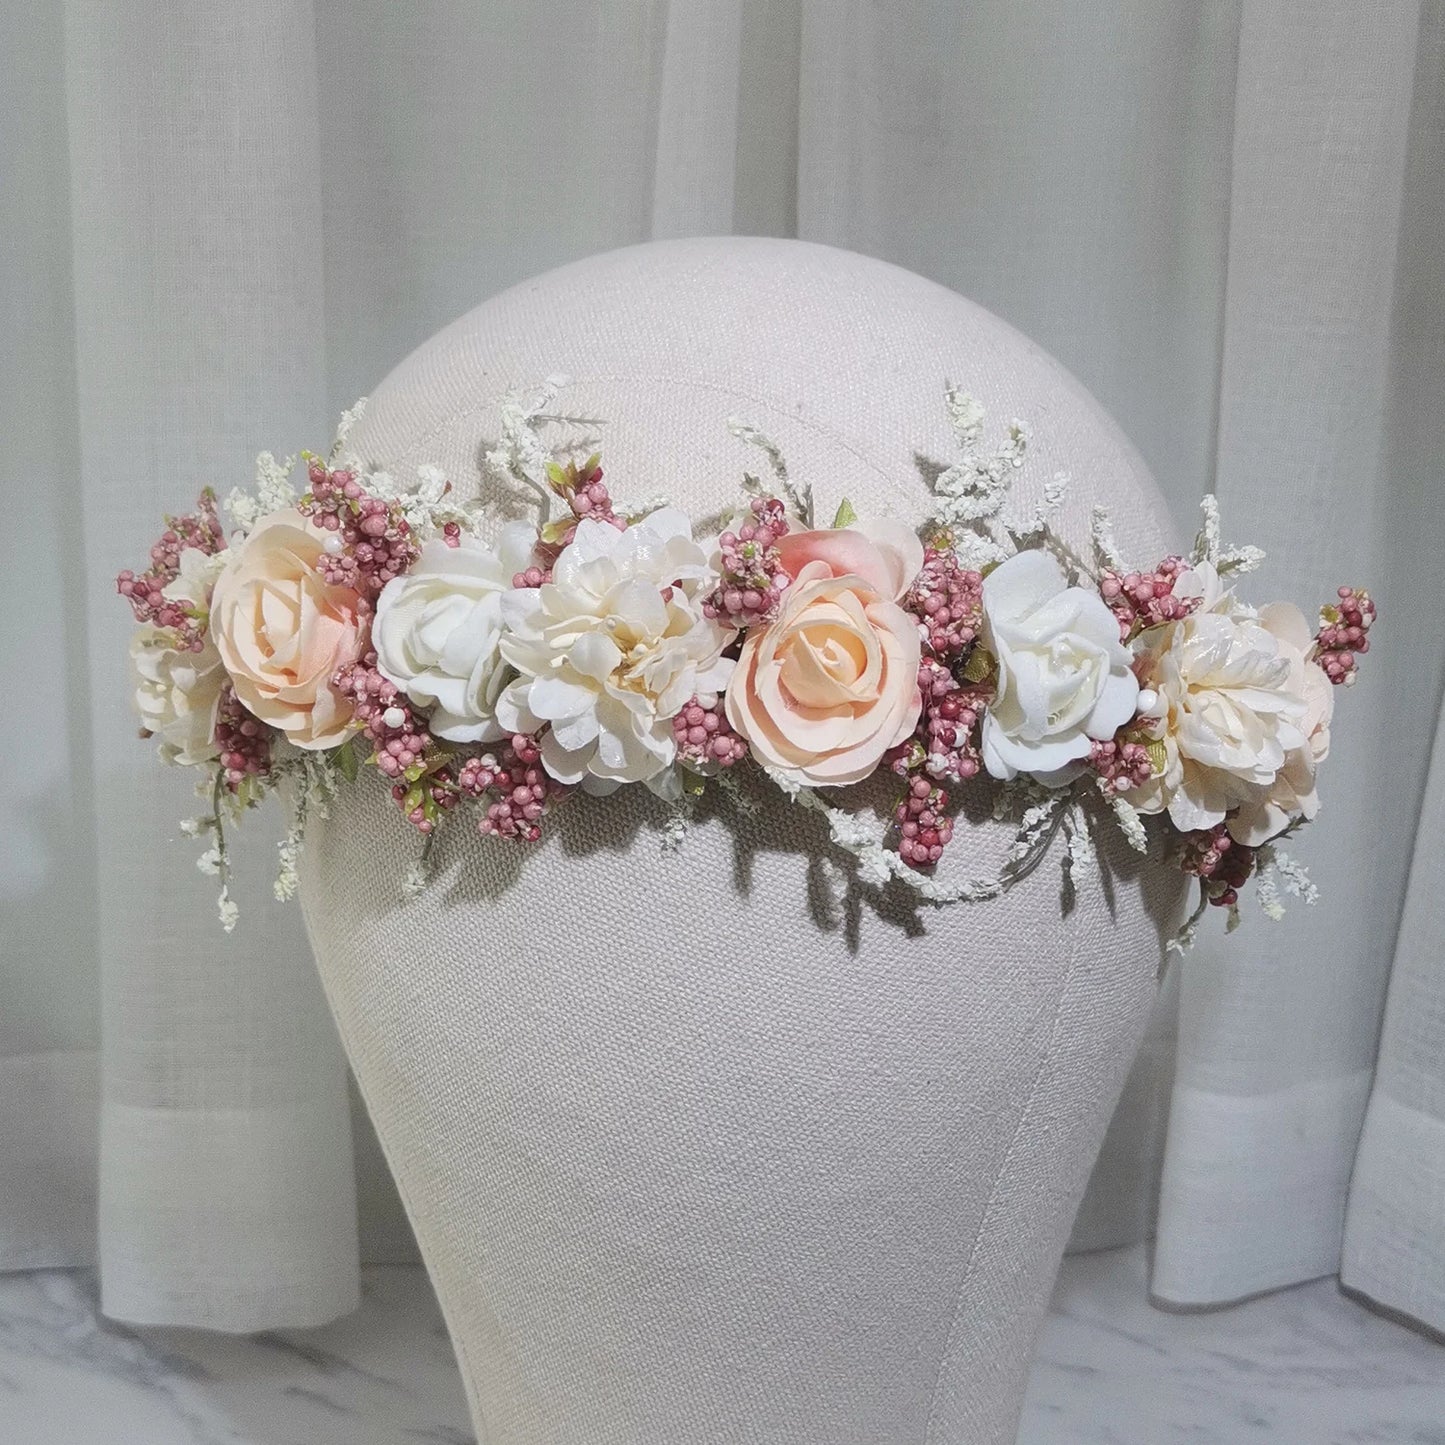 Flyshadow Flower Girl's Flower Crown Girls' Dress Hair Accessories Wedding Bridal Headband Ornament Kids Children Floral Garlands